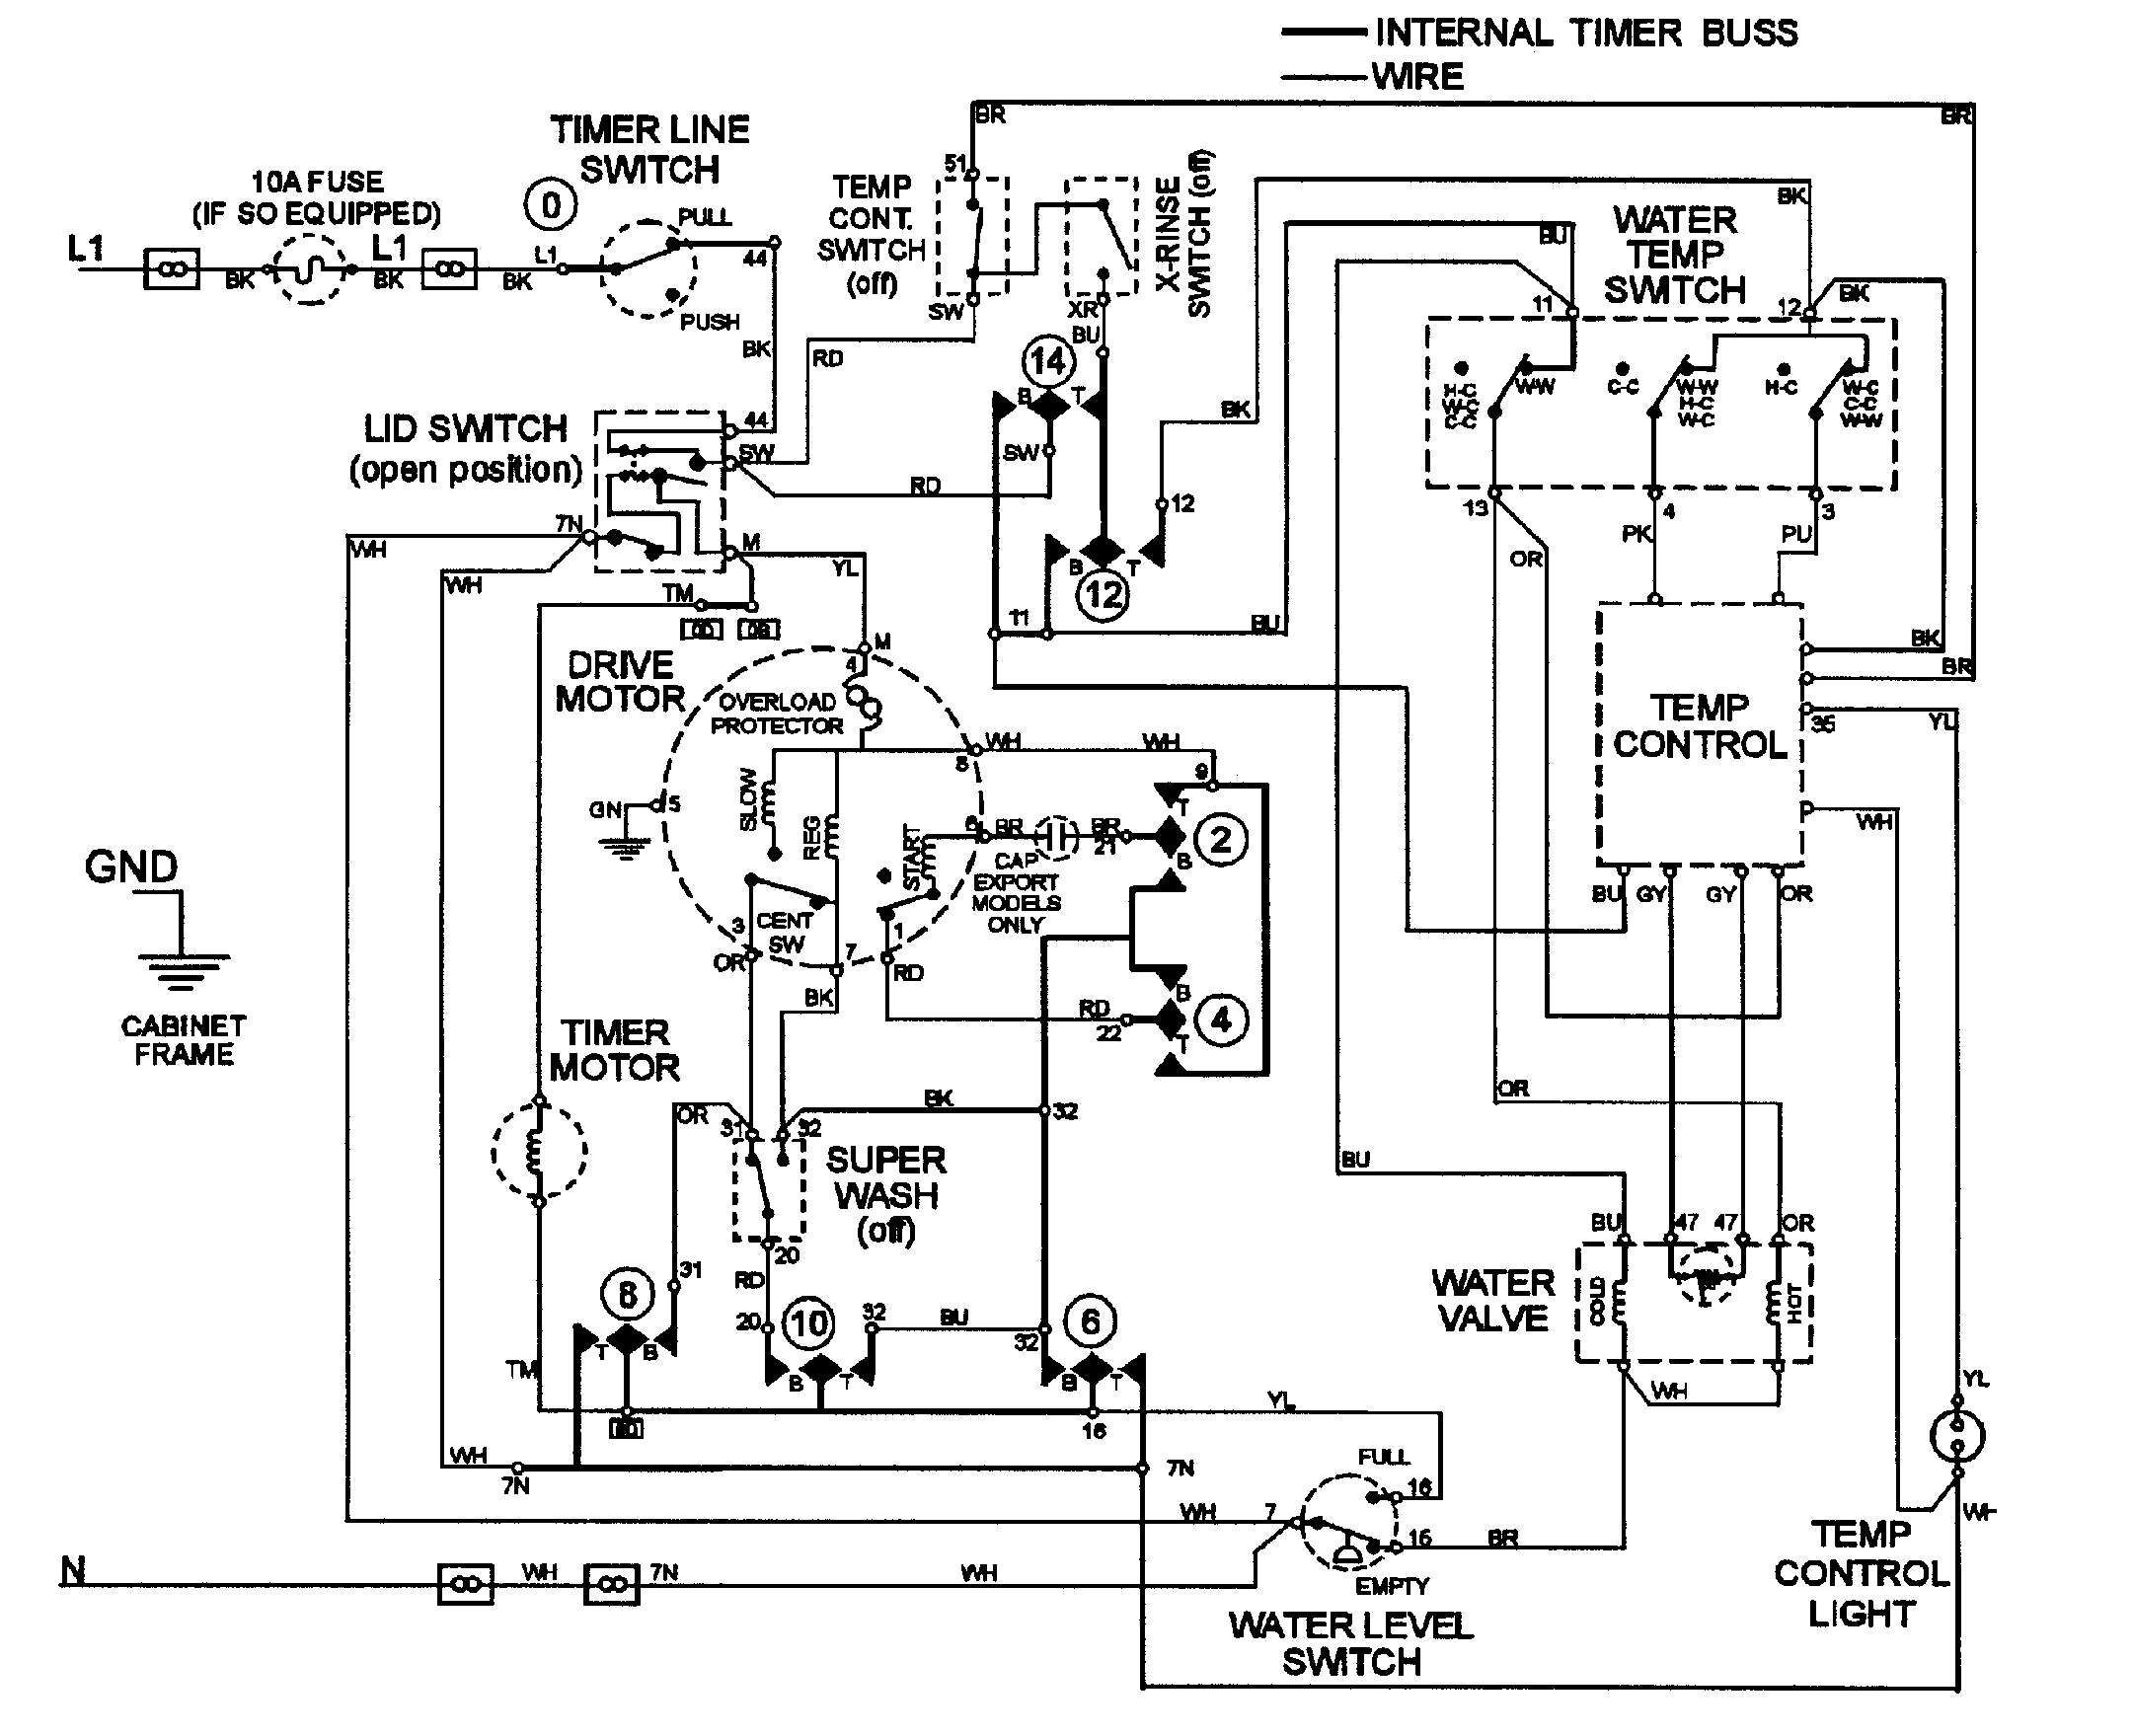 Videocon Tv Circuit Diagram Model No